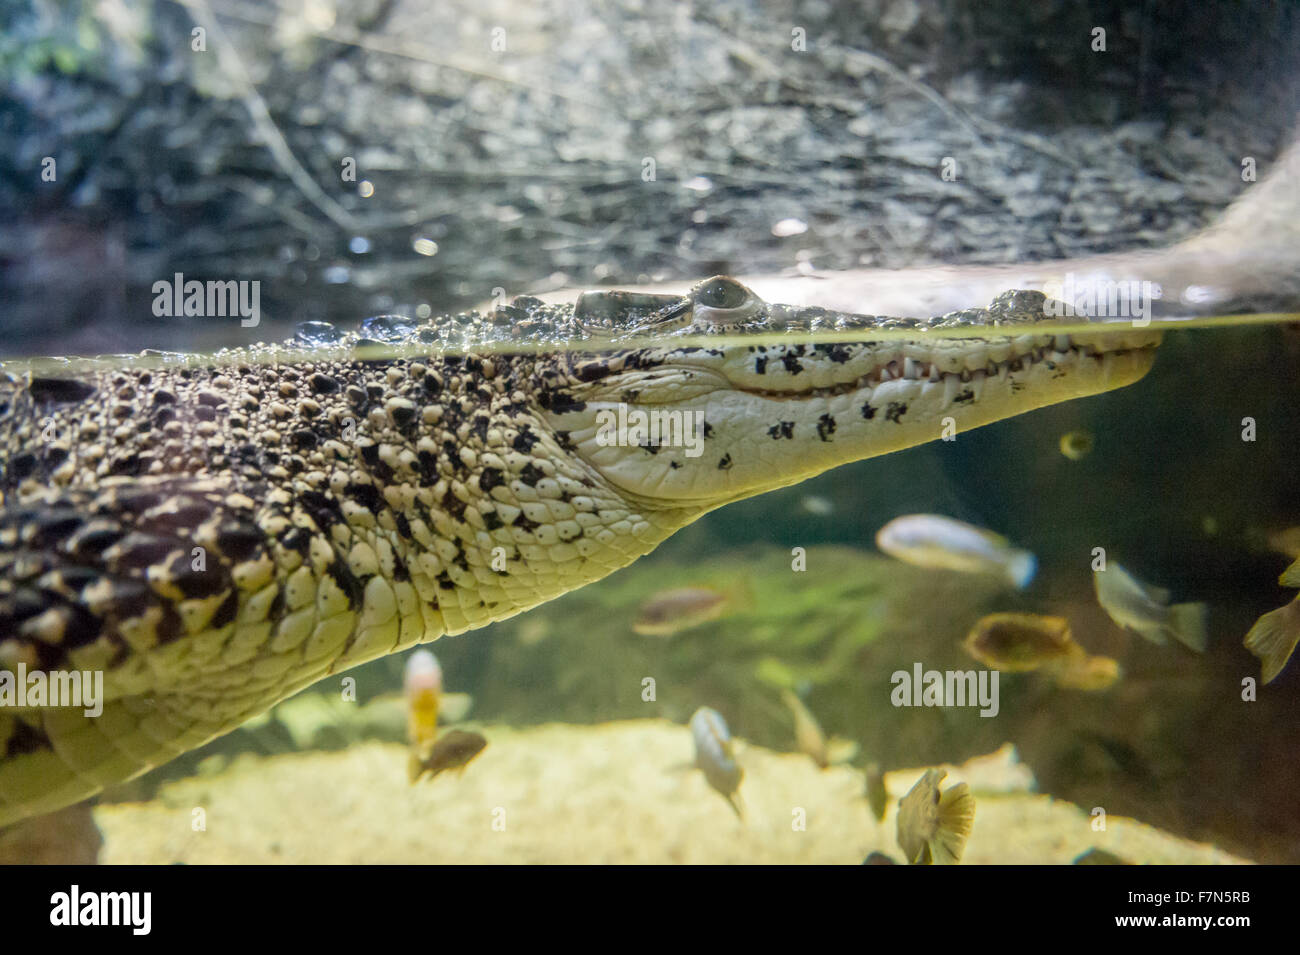 Nahaufnahme eines Reptils in Wasser im zoo Stockfoto